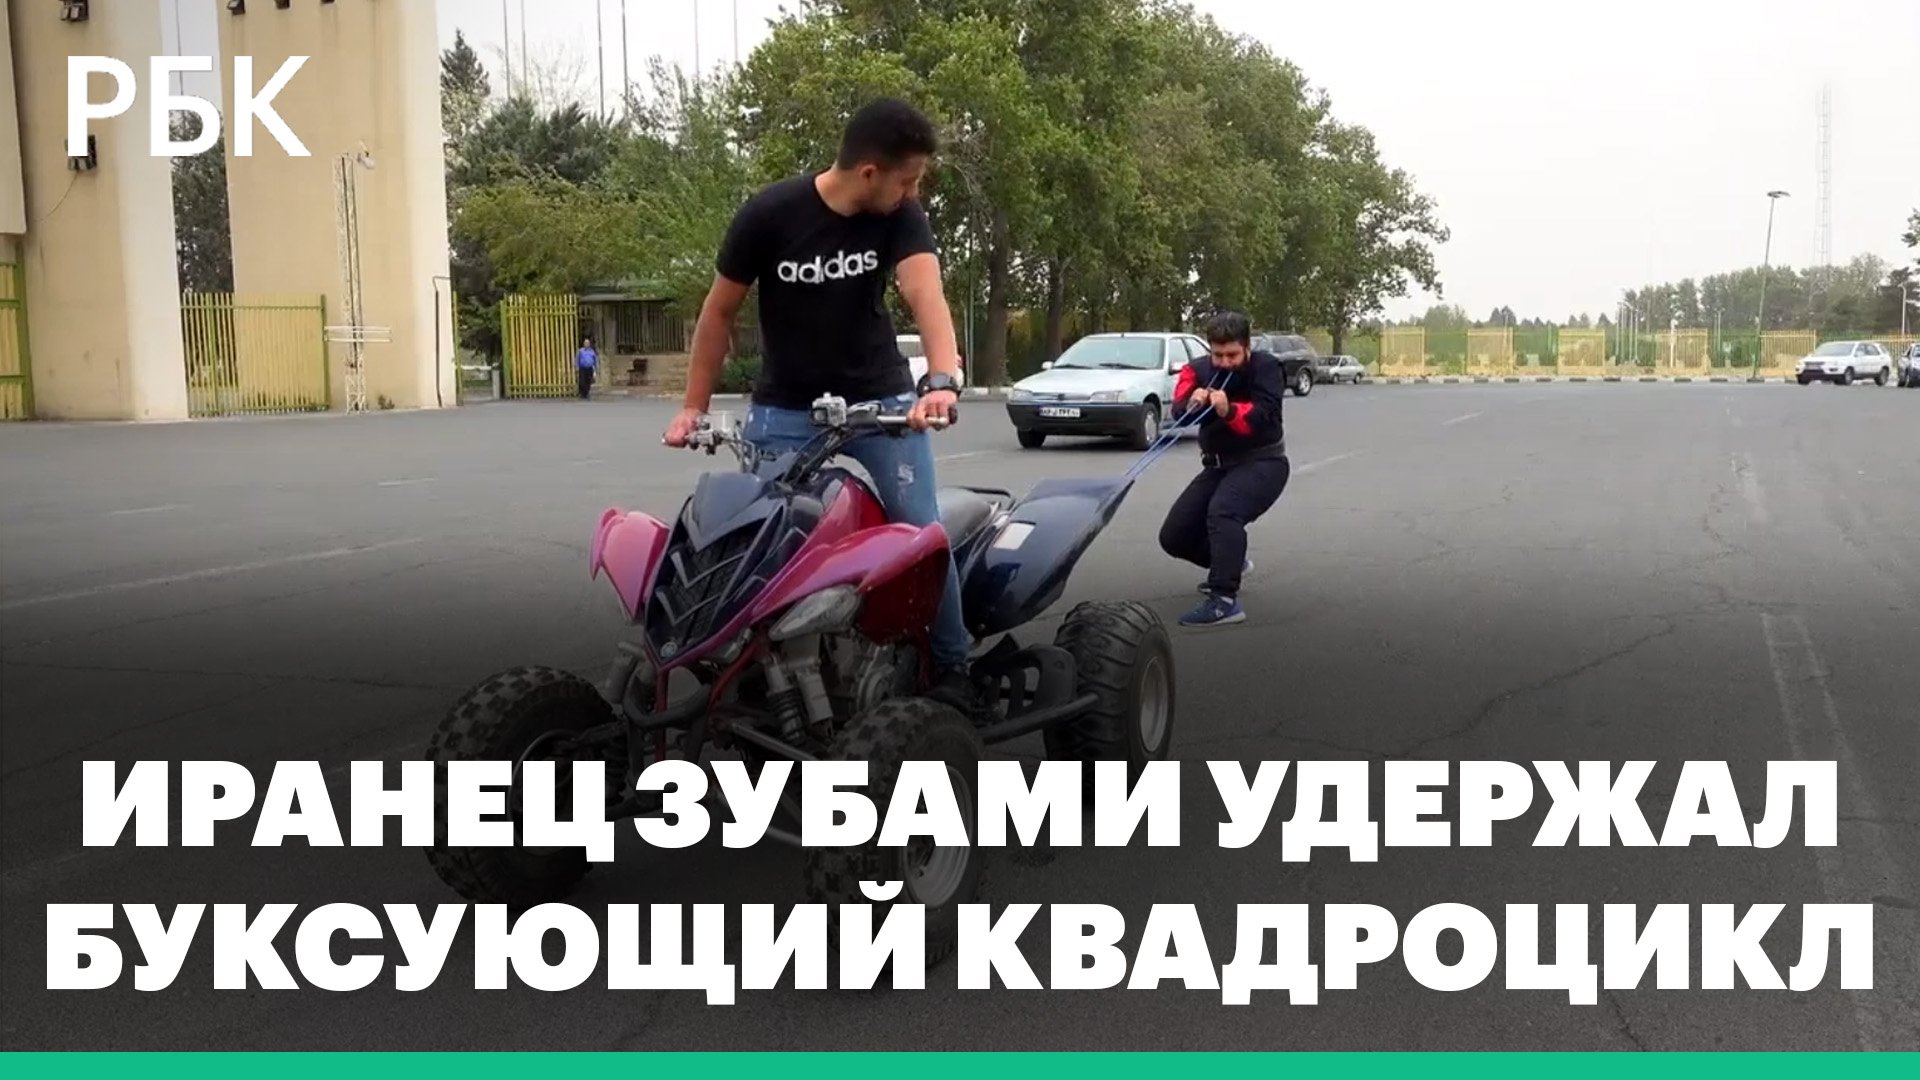 Удерживание буксующих мотоциклов руками и квадроциклов — зубами. Иранцы показали силовые трюки